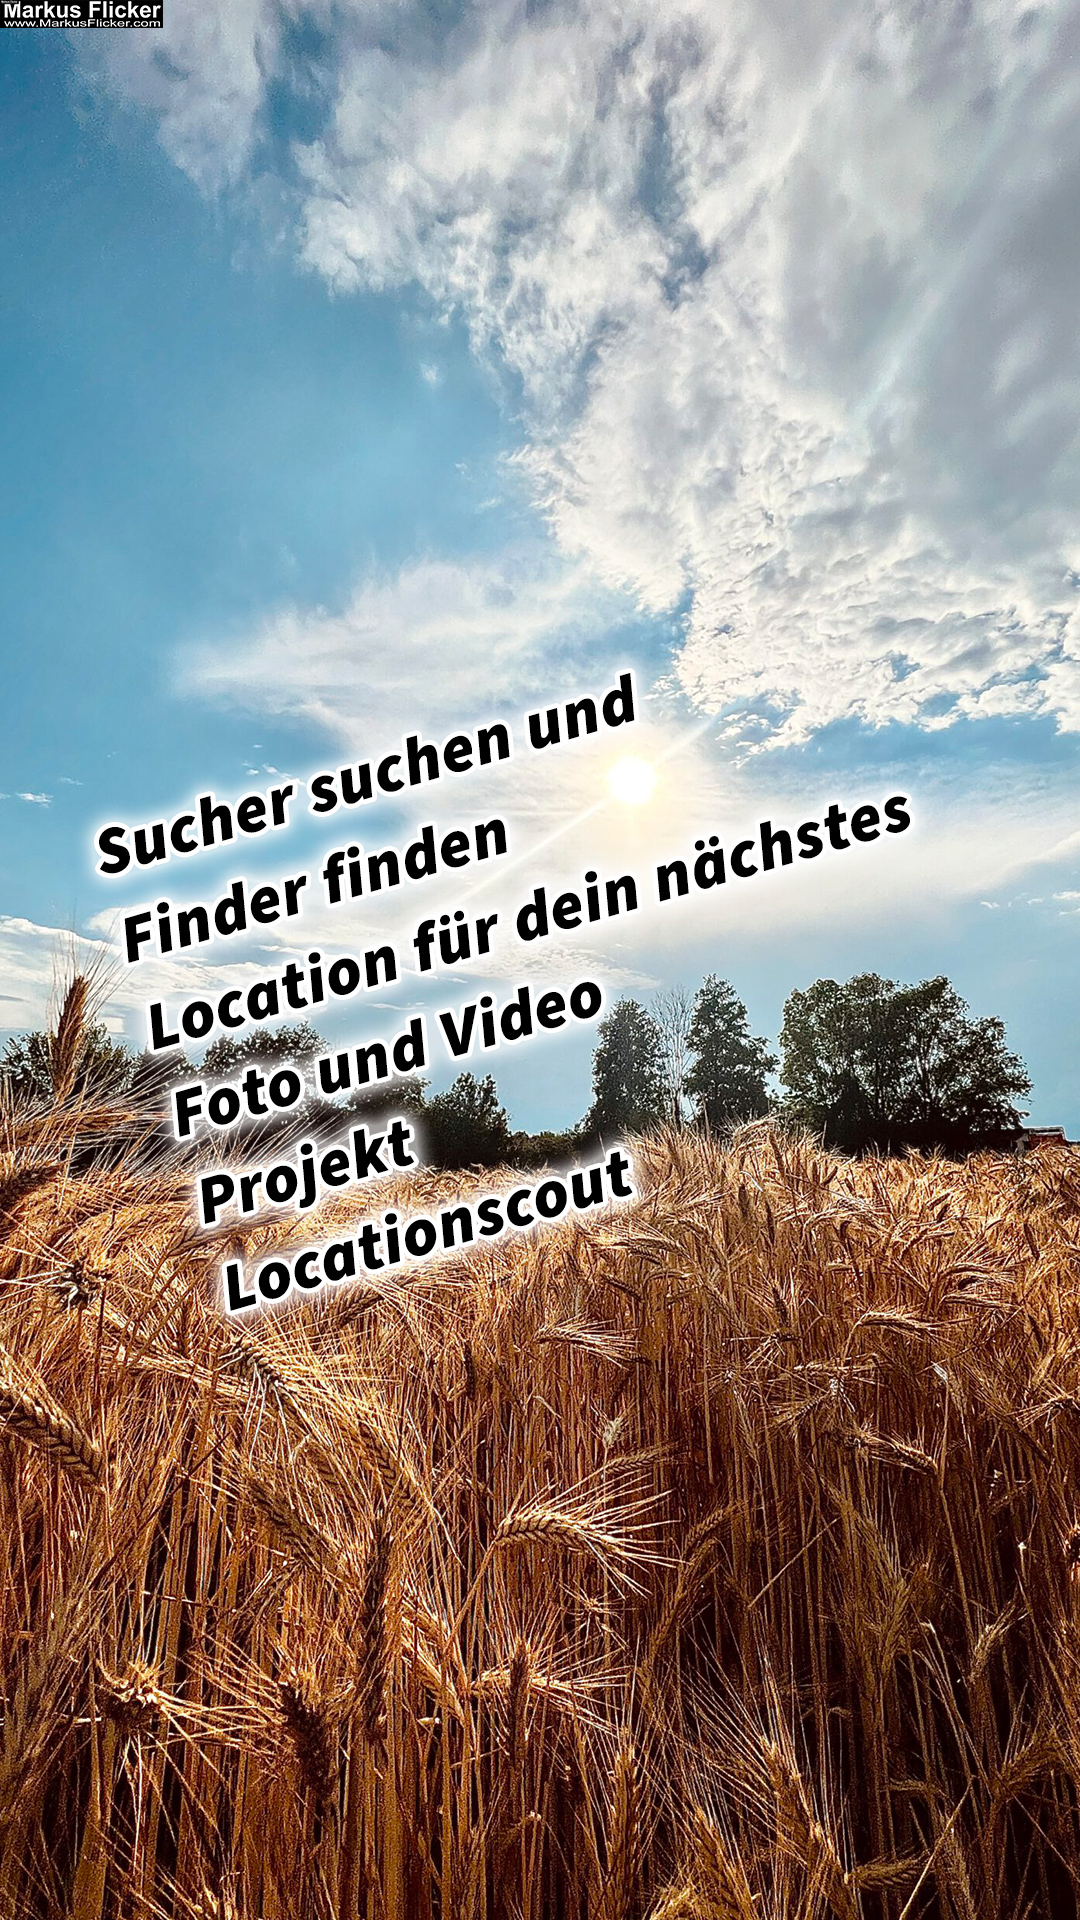 Sucher suchen und Finder finden Location für dein nächstes Foto und Video Projekt Locationscout